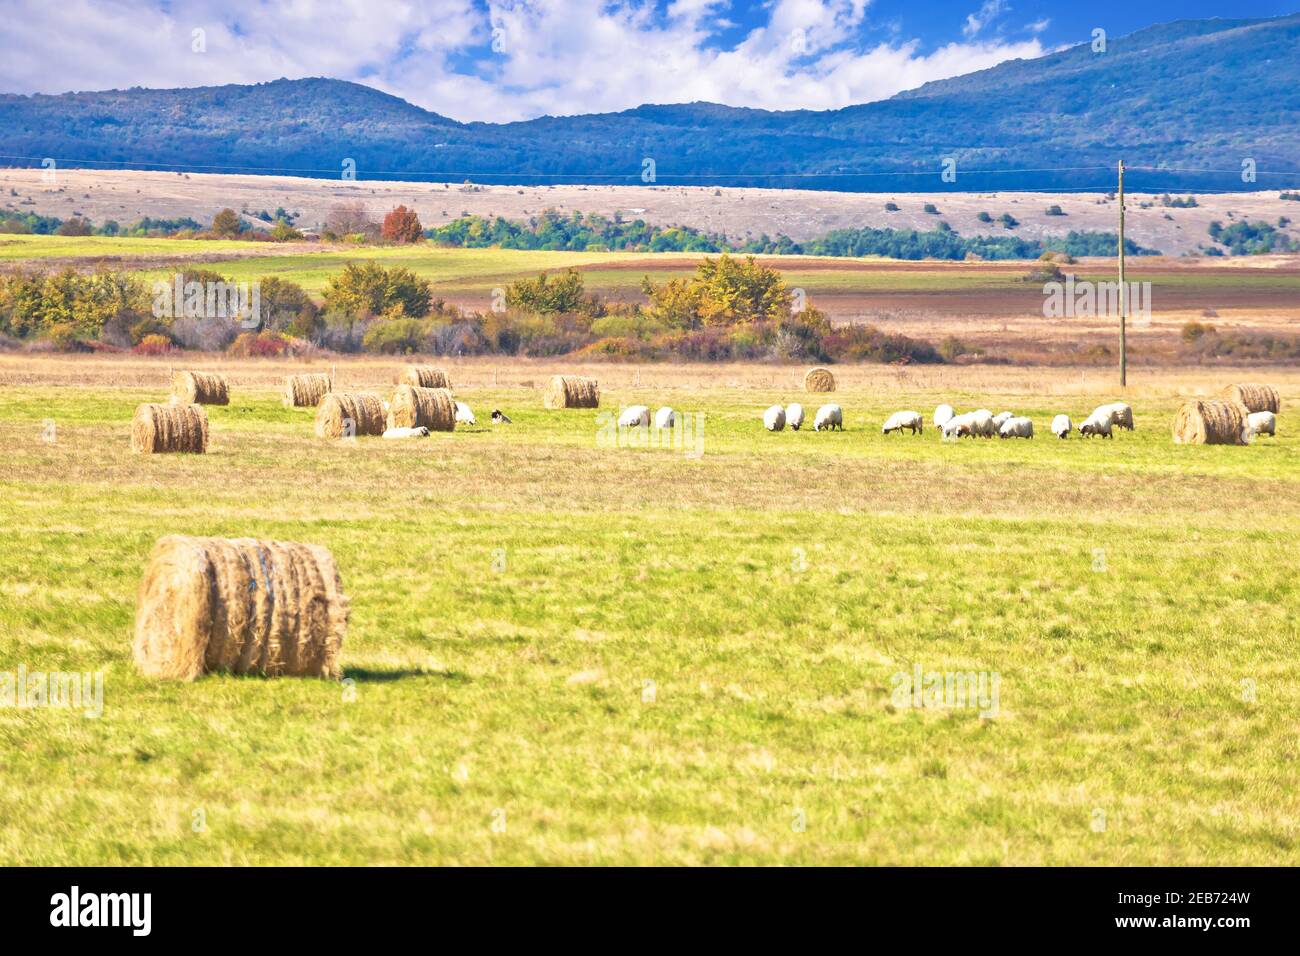 Krbava campo. Paisaje rural escénico y cría de ovejas en la región de Lika, en el centro de Croacia Foto de stock